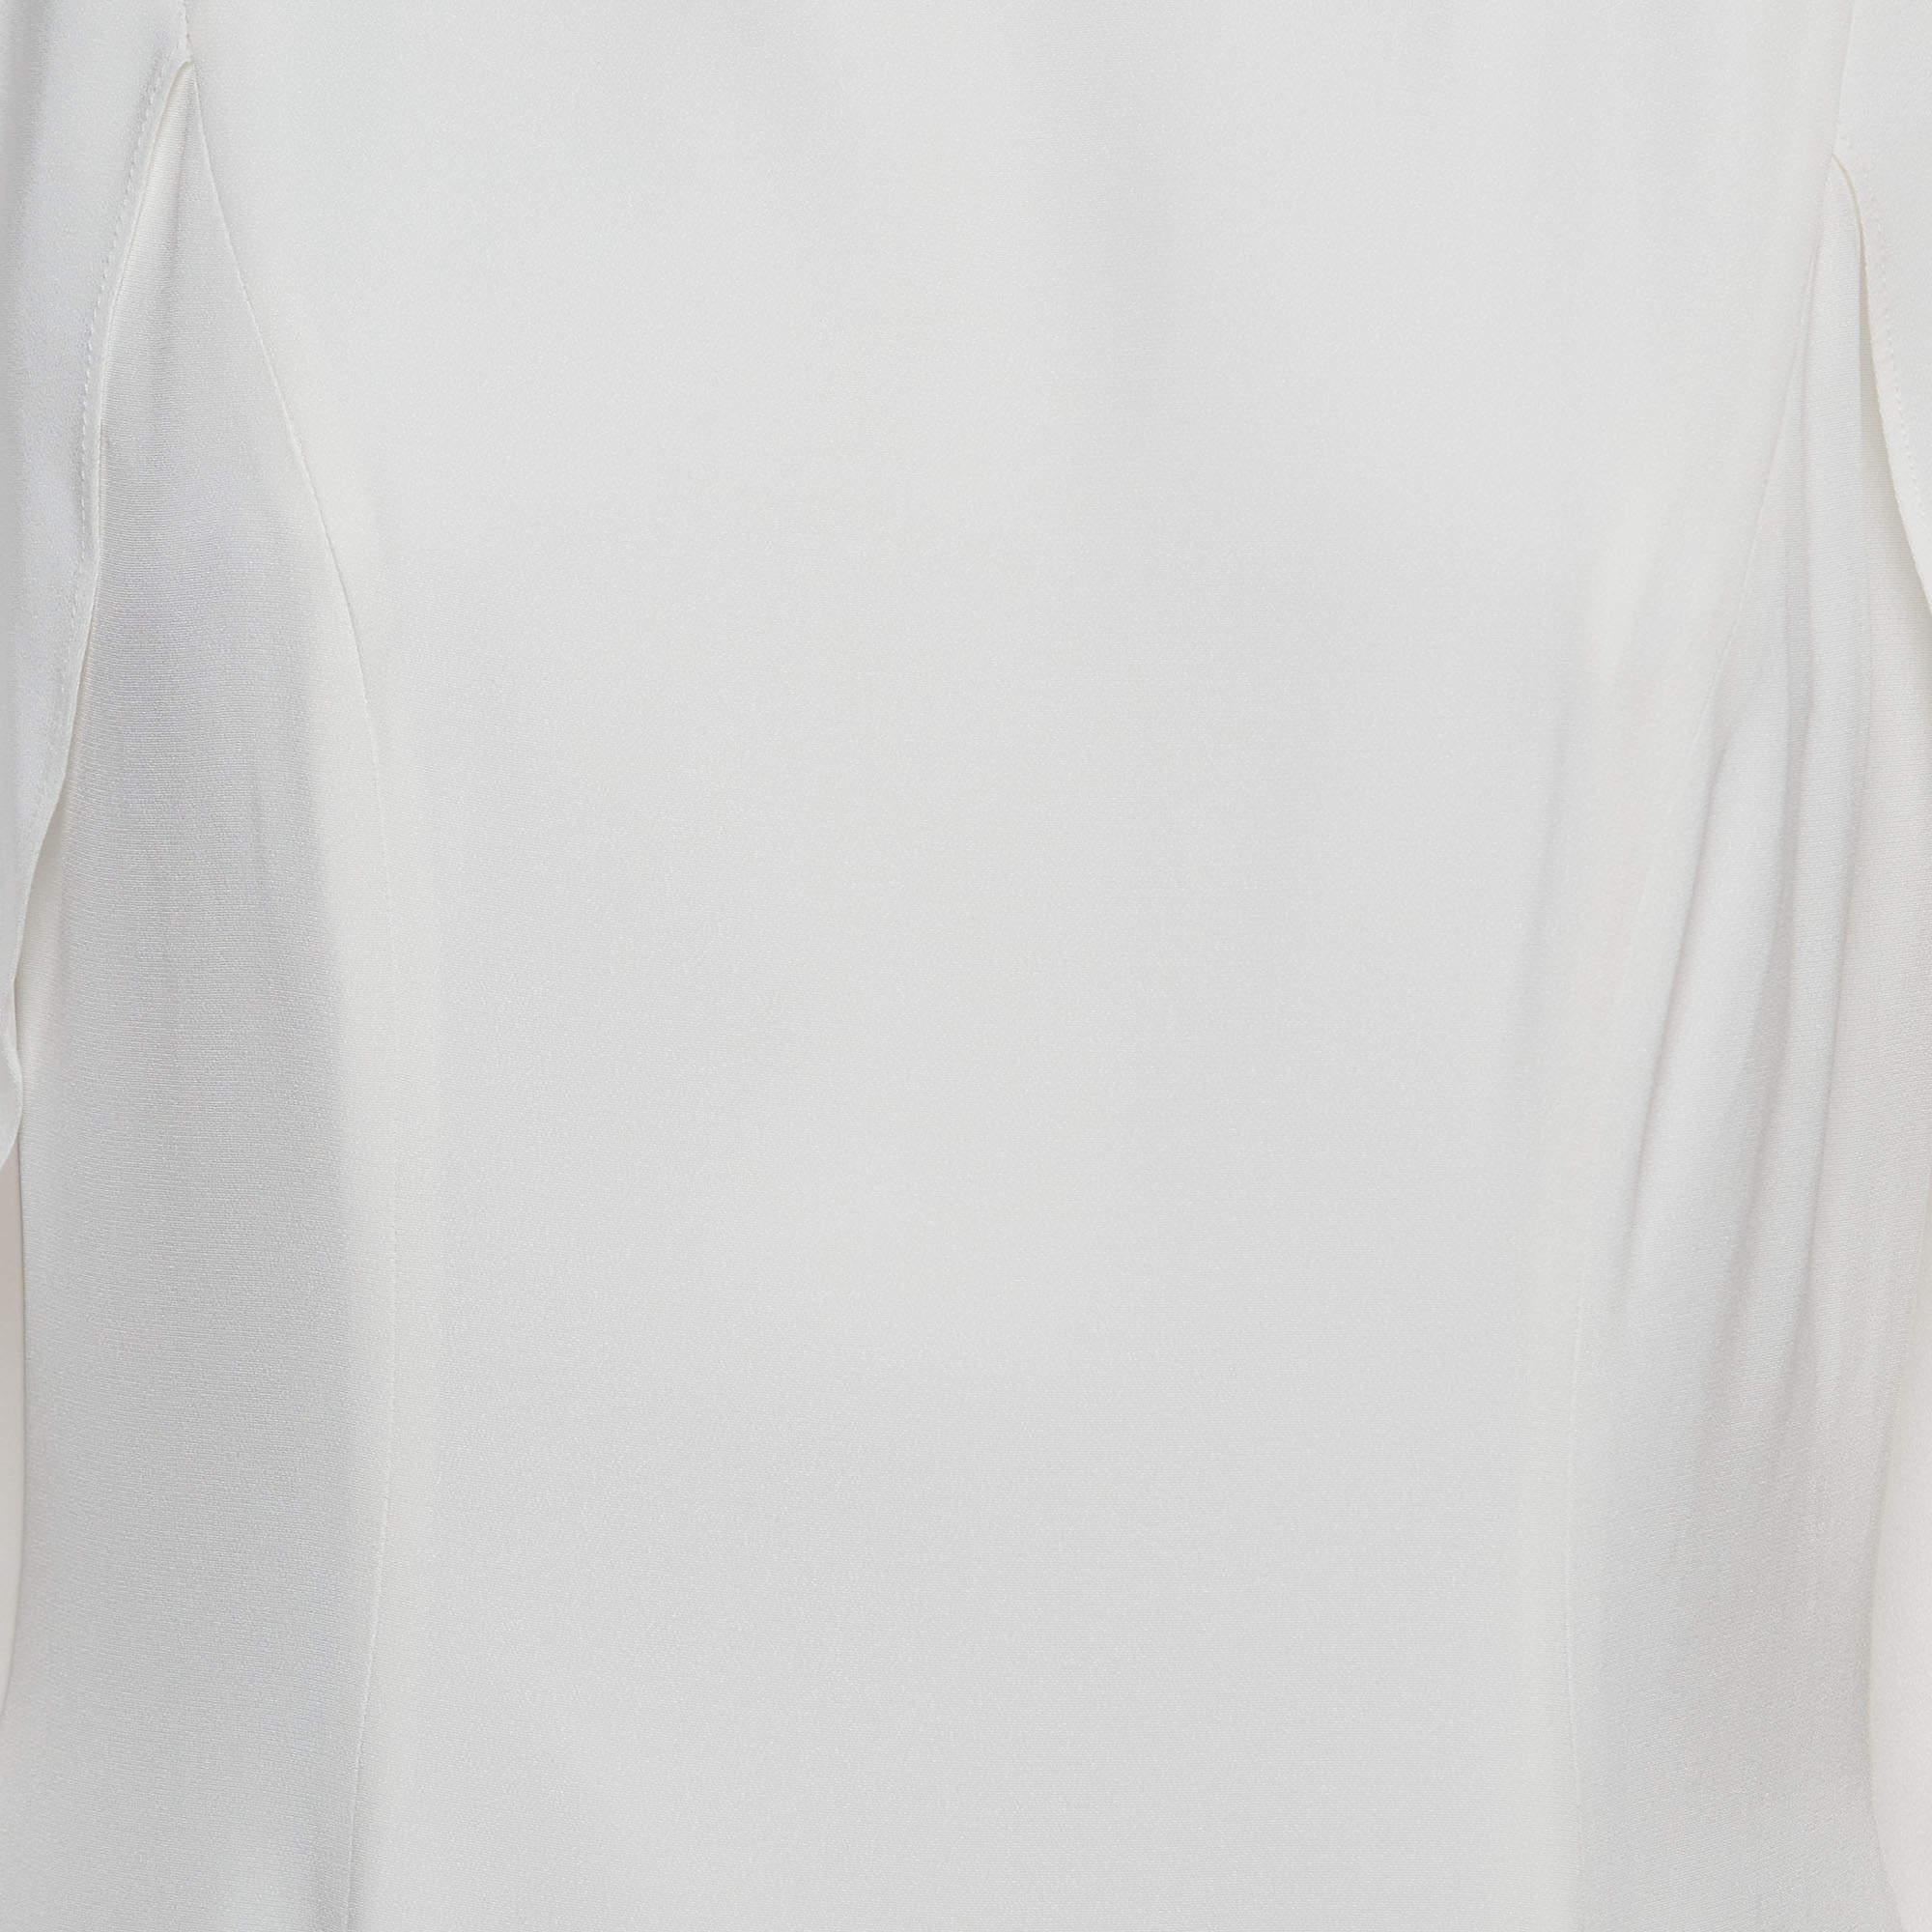 Jenny Packham White Satin Crystal Embellished Neck Wedding Gown L For Sale 2